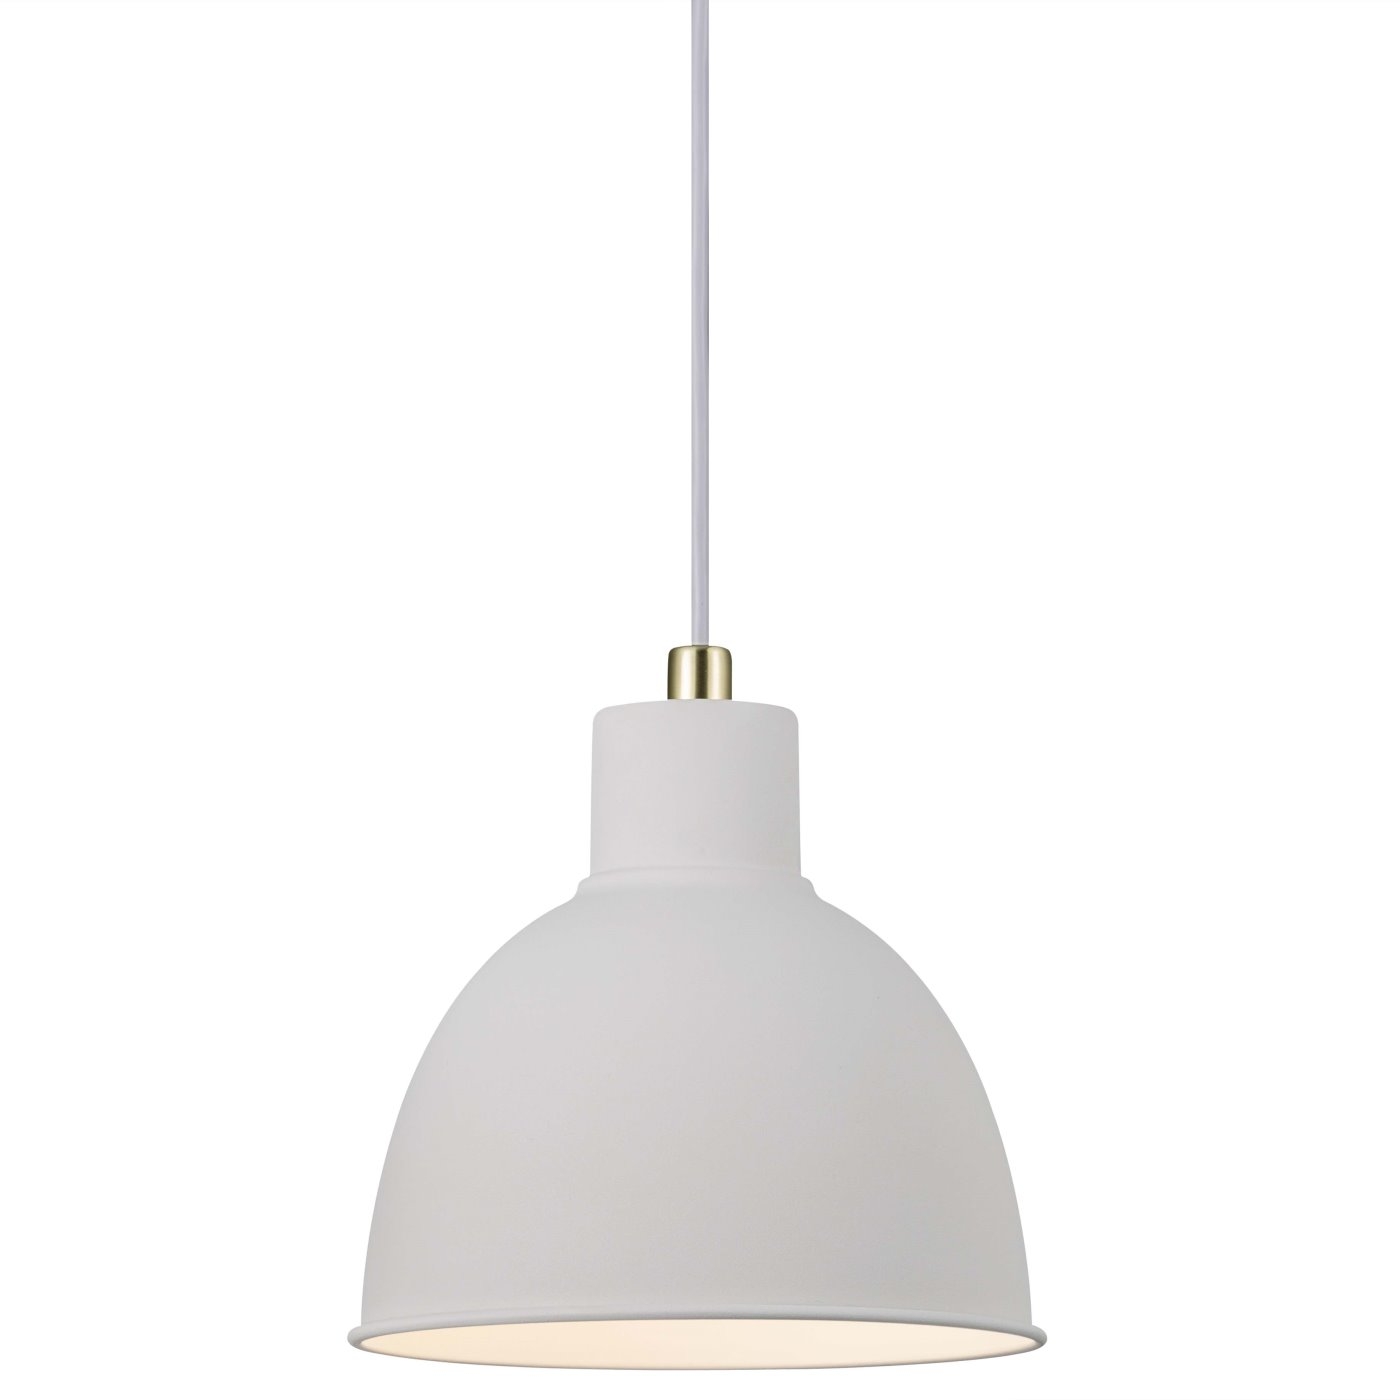 Hngelampe weiss Rau Nordlux Pop Ru 23 Metall Schirm mit E27 Fassung unter Hngeleuchten > Kchenbeleuchtung > Beleuchtung